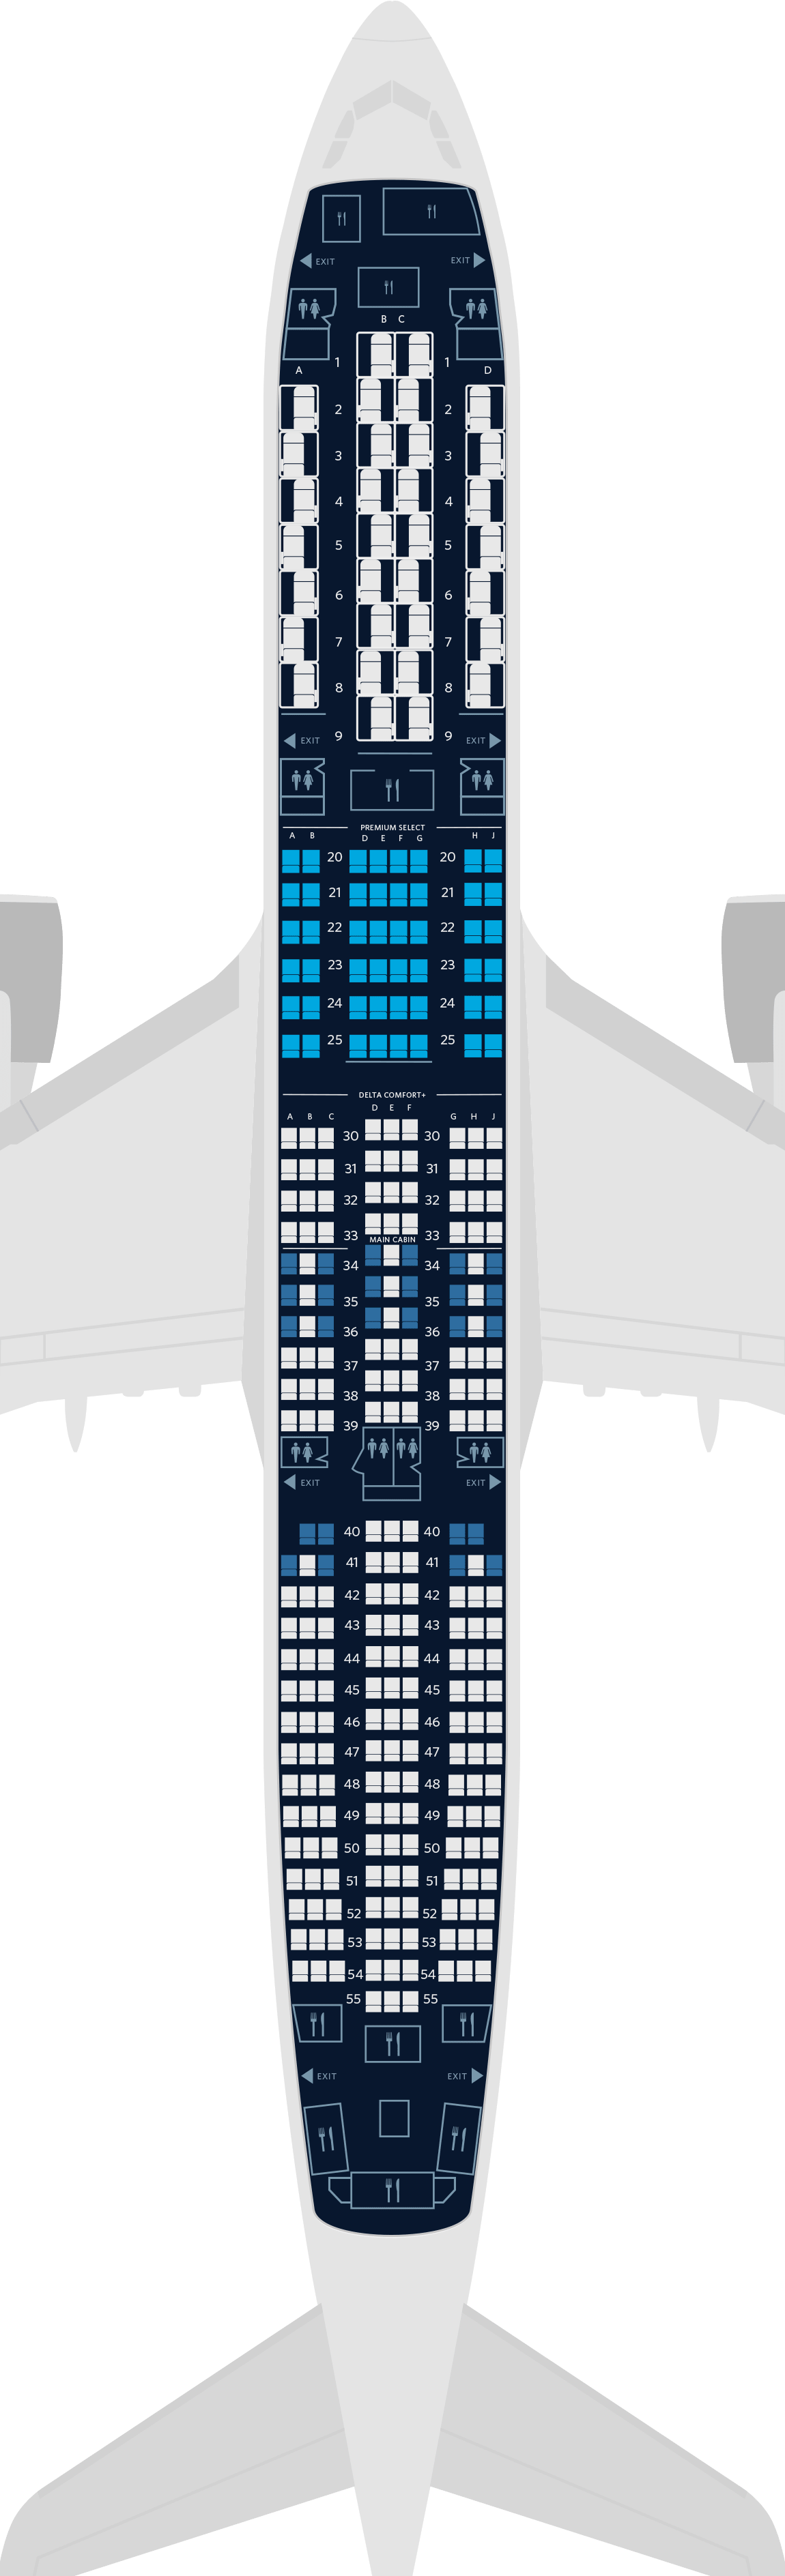  空中巴士A350-900 4客艙座位圖